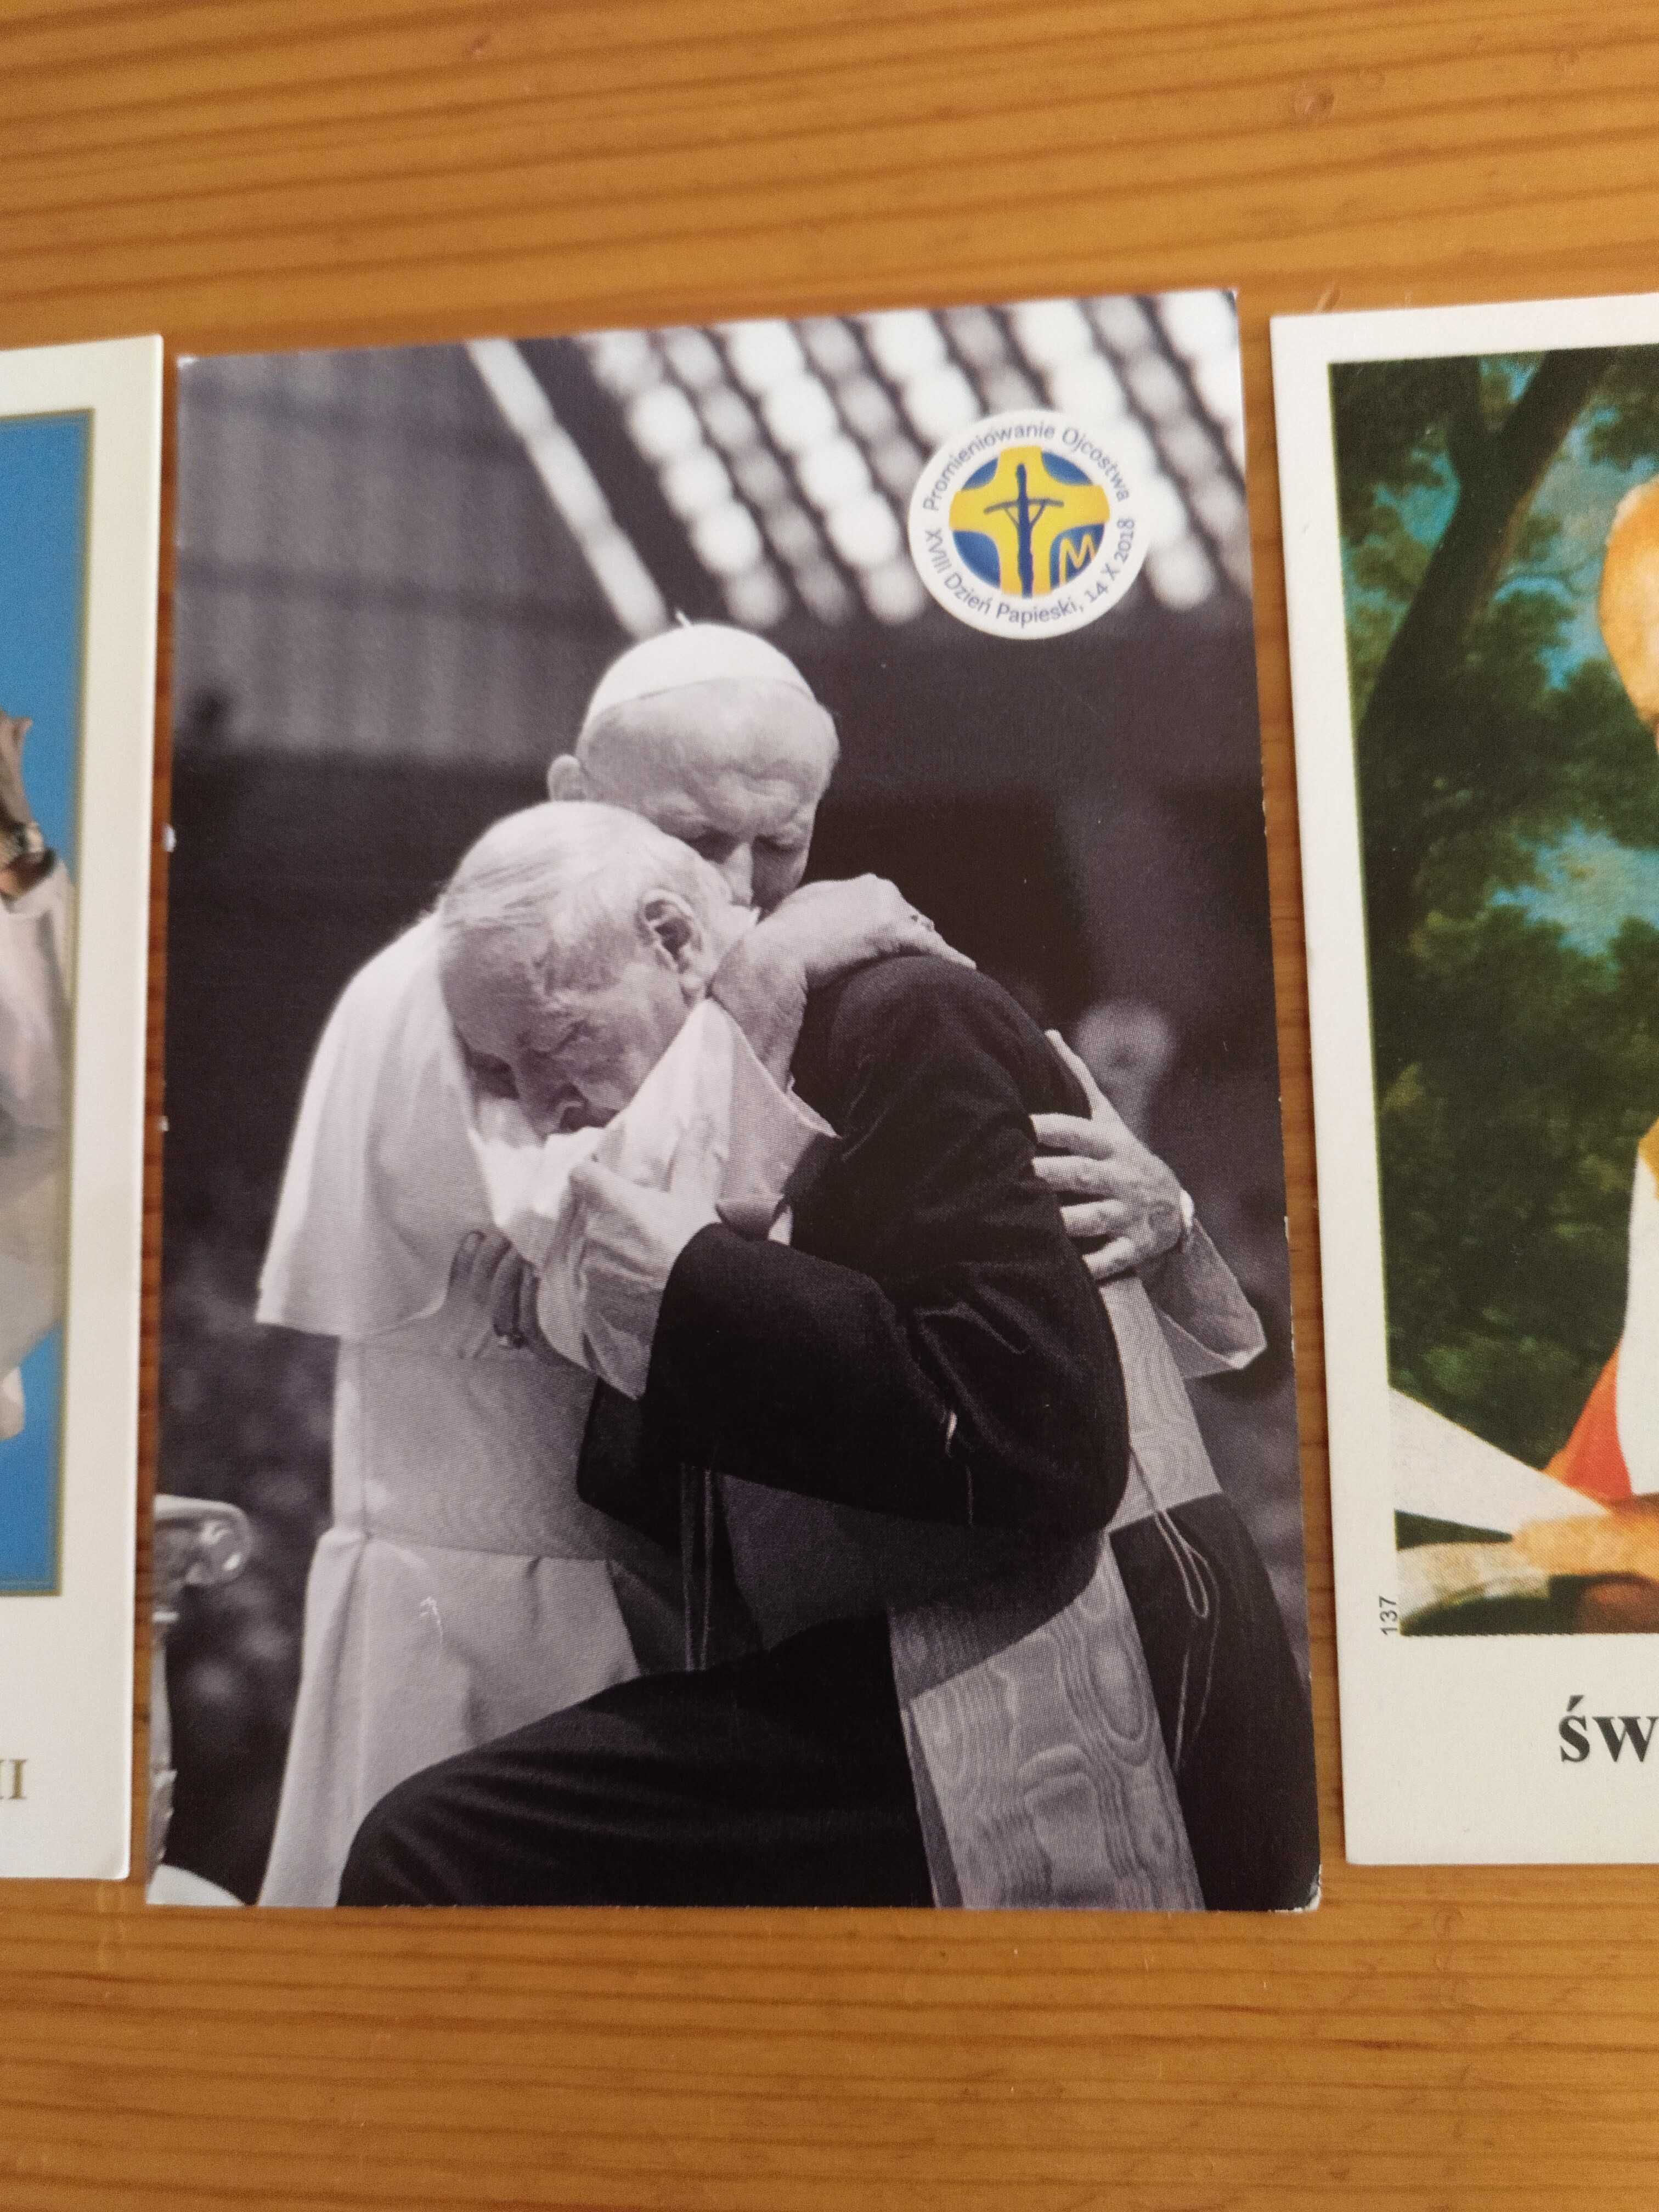 Papież duża kolekcja , Ojciec Święty, znaczek, znaczki